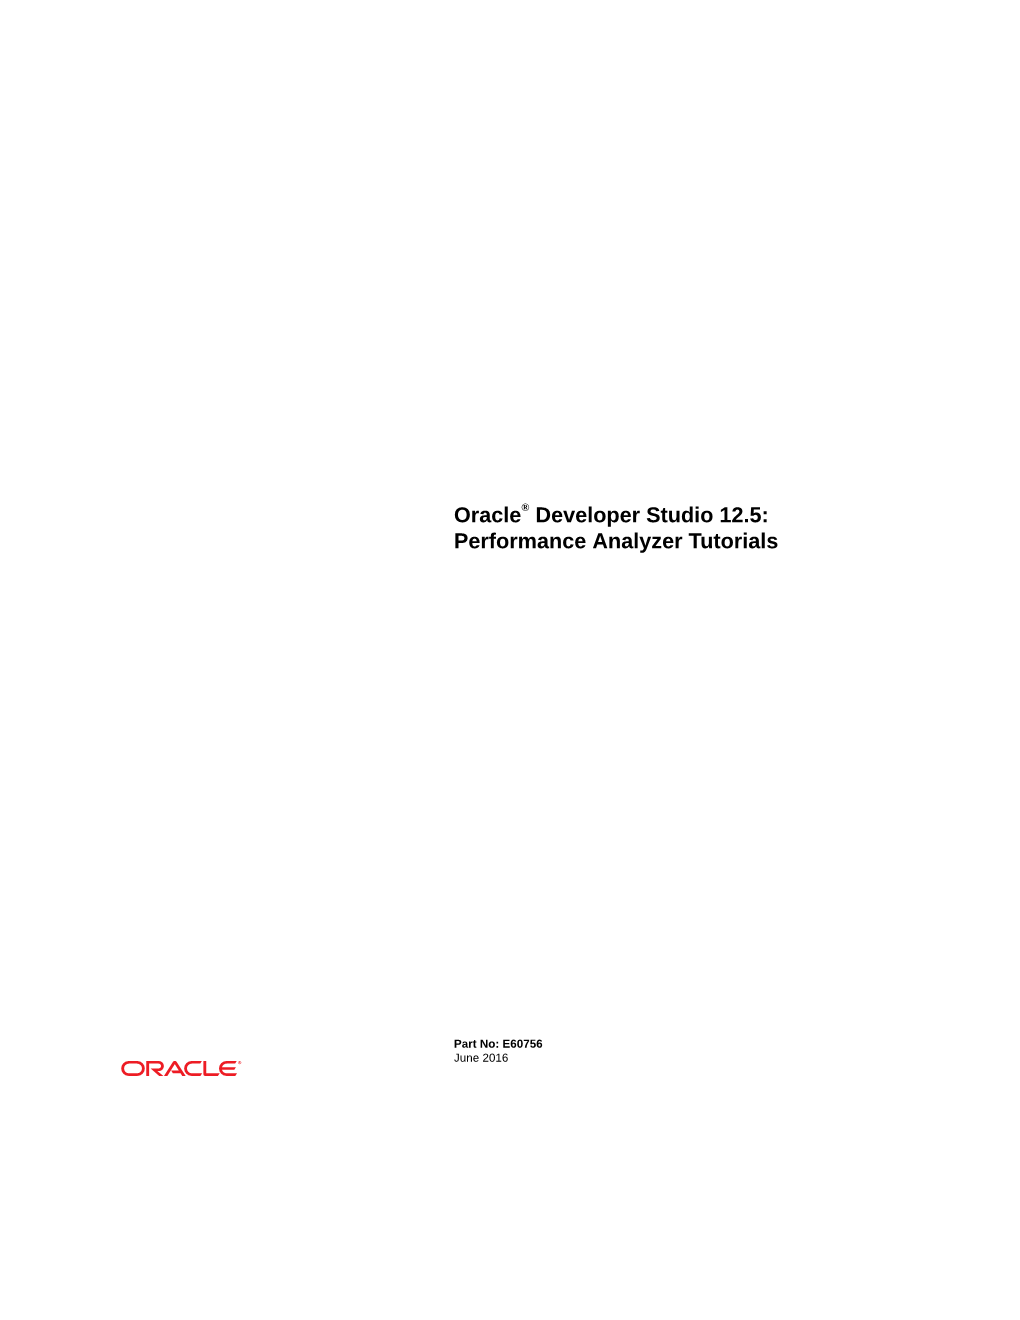 Oracle® Developer Studio 12.5: Performance Analyzer Tutorials